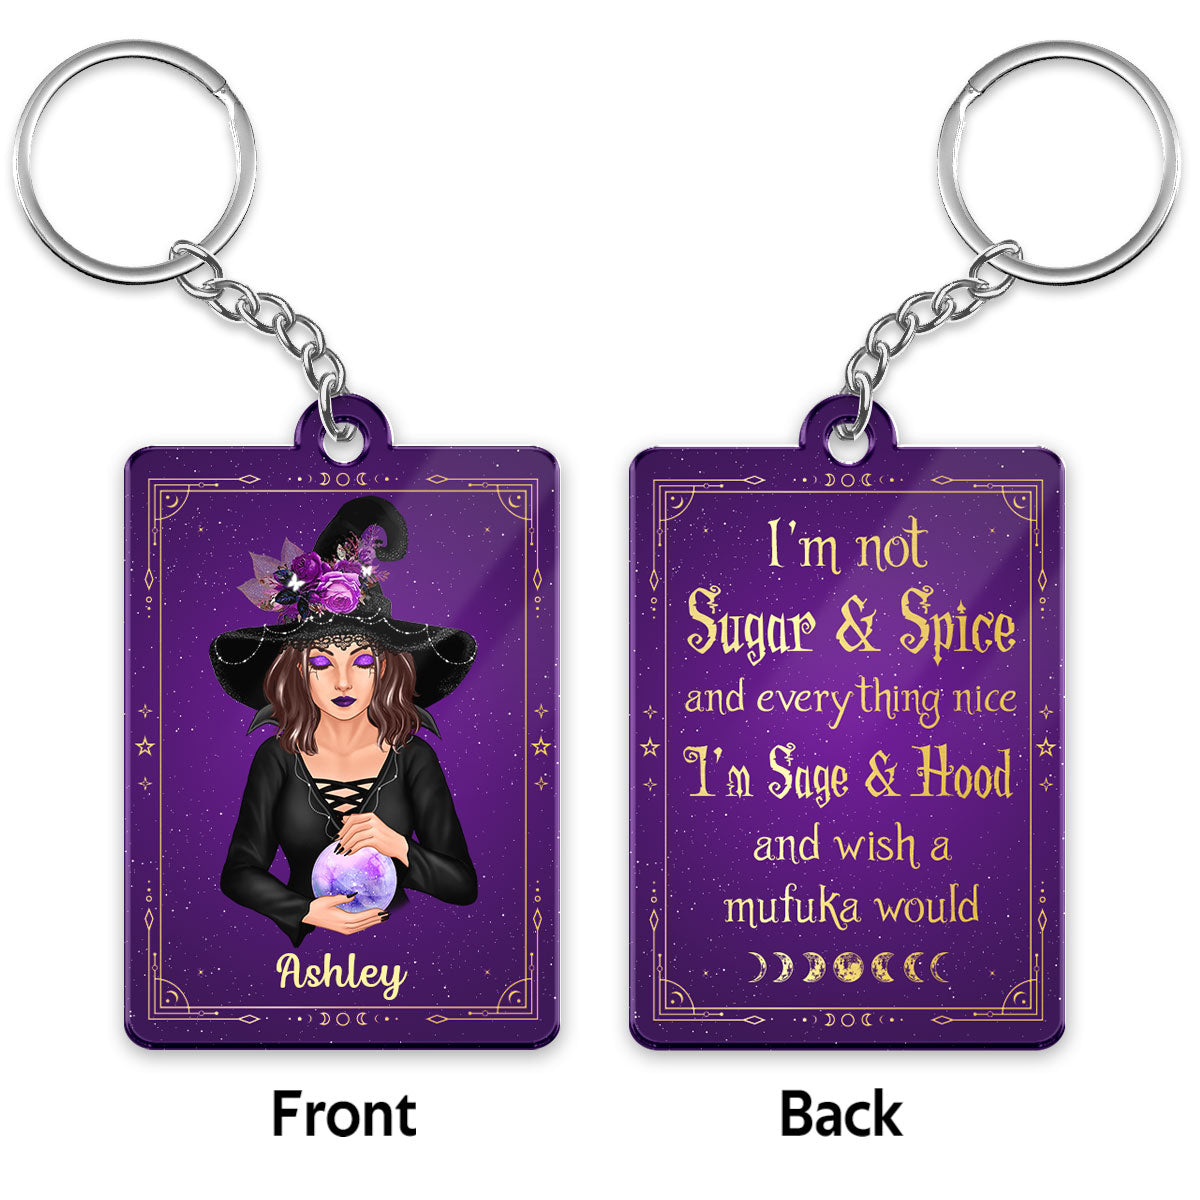 I‘m Not Sugar & Spice Pretty Witch Halloween Personalized Acrylic Keychain